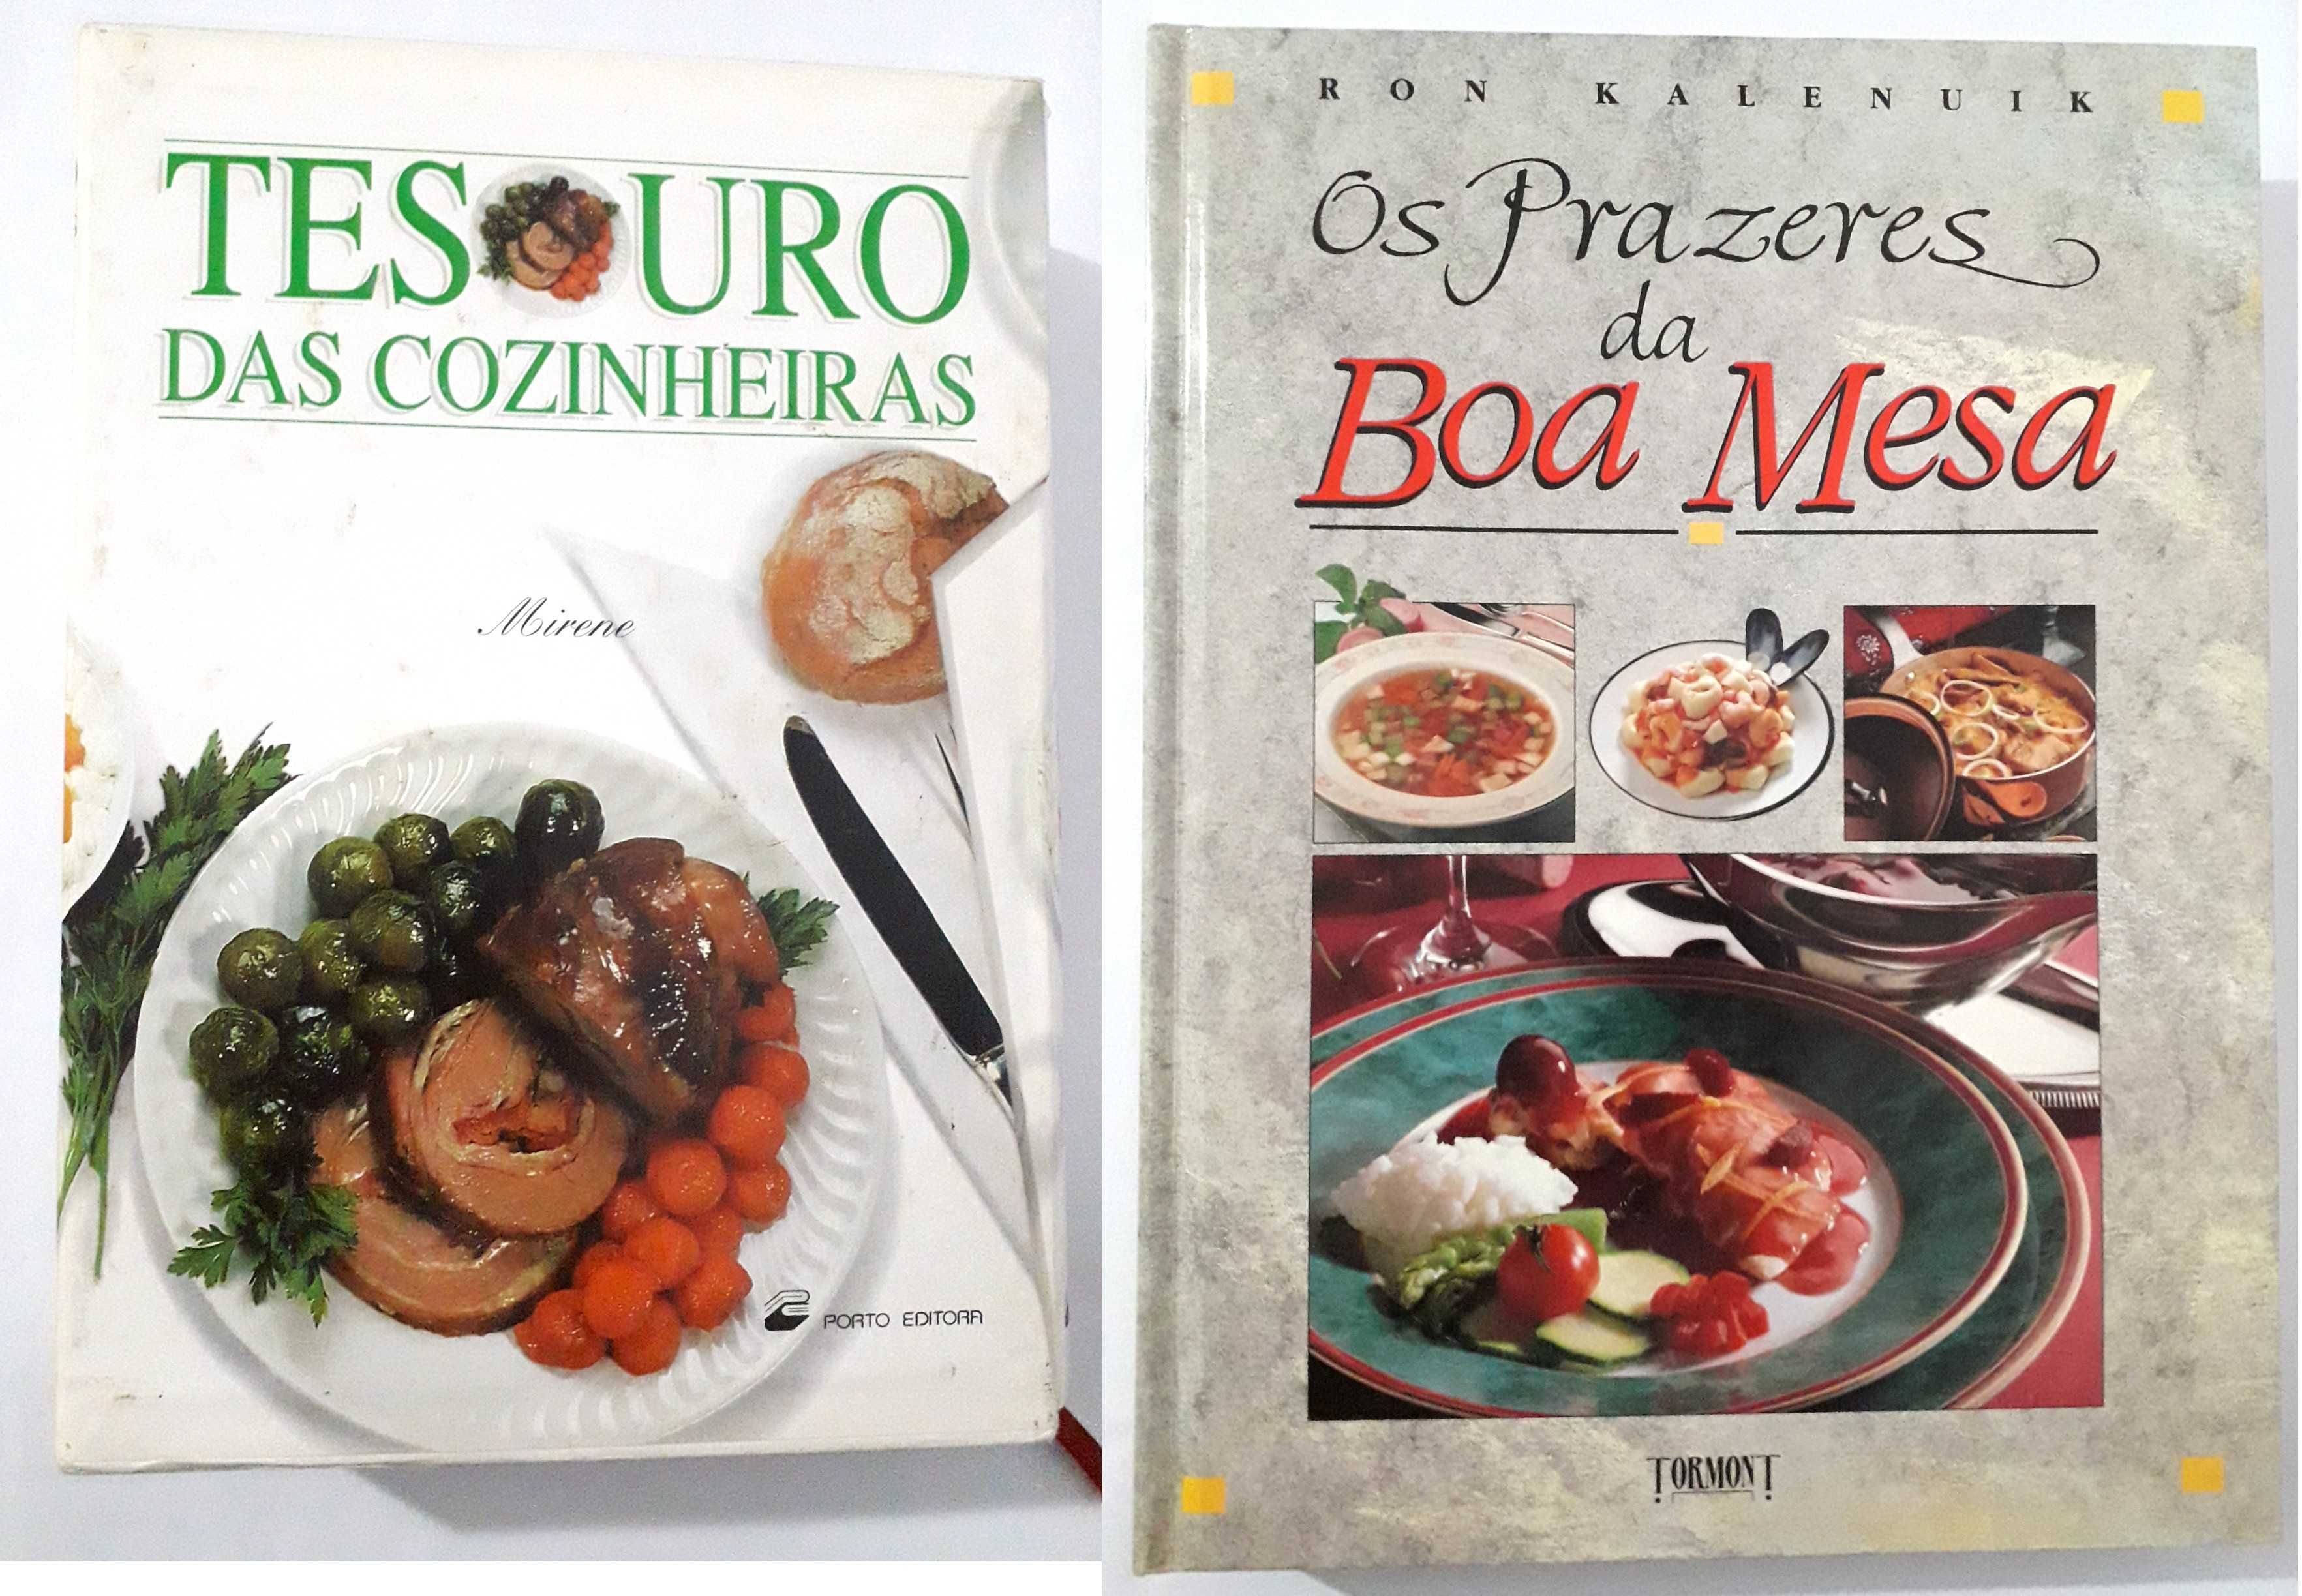 Livros de Culinária: Tesouro das Cozinheiras / Os Prazeres da Boa Mesa